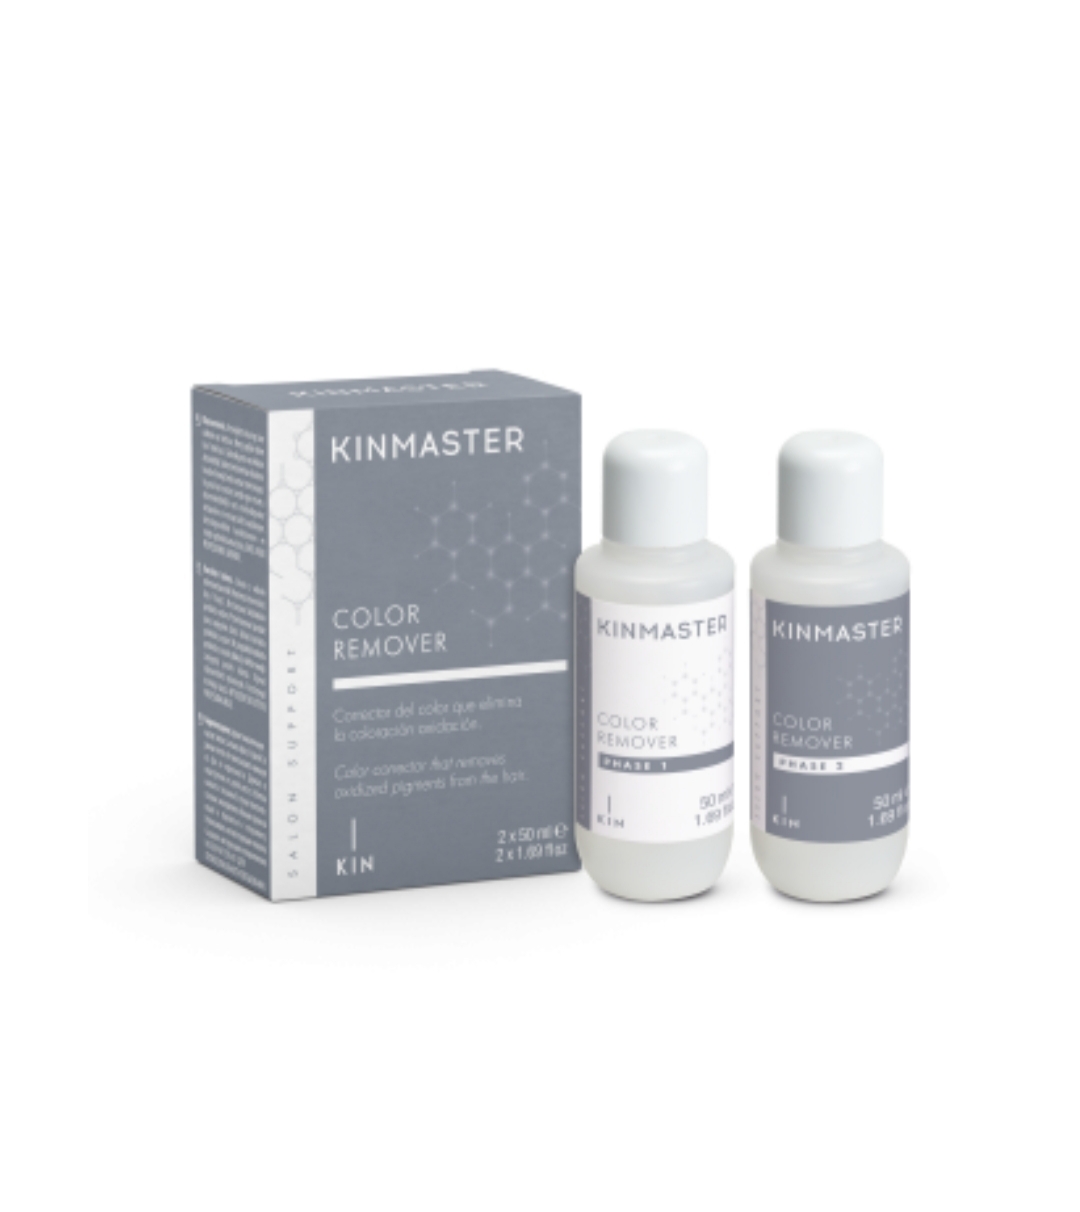 فراورده های حالت دهنده ،نرم کننده وتثبیت کننده آرایش مو (کرمها ، لوسیونها وروغنها) KIN KINMASTER COLOR REMOVER 2 x 50 ML